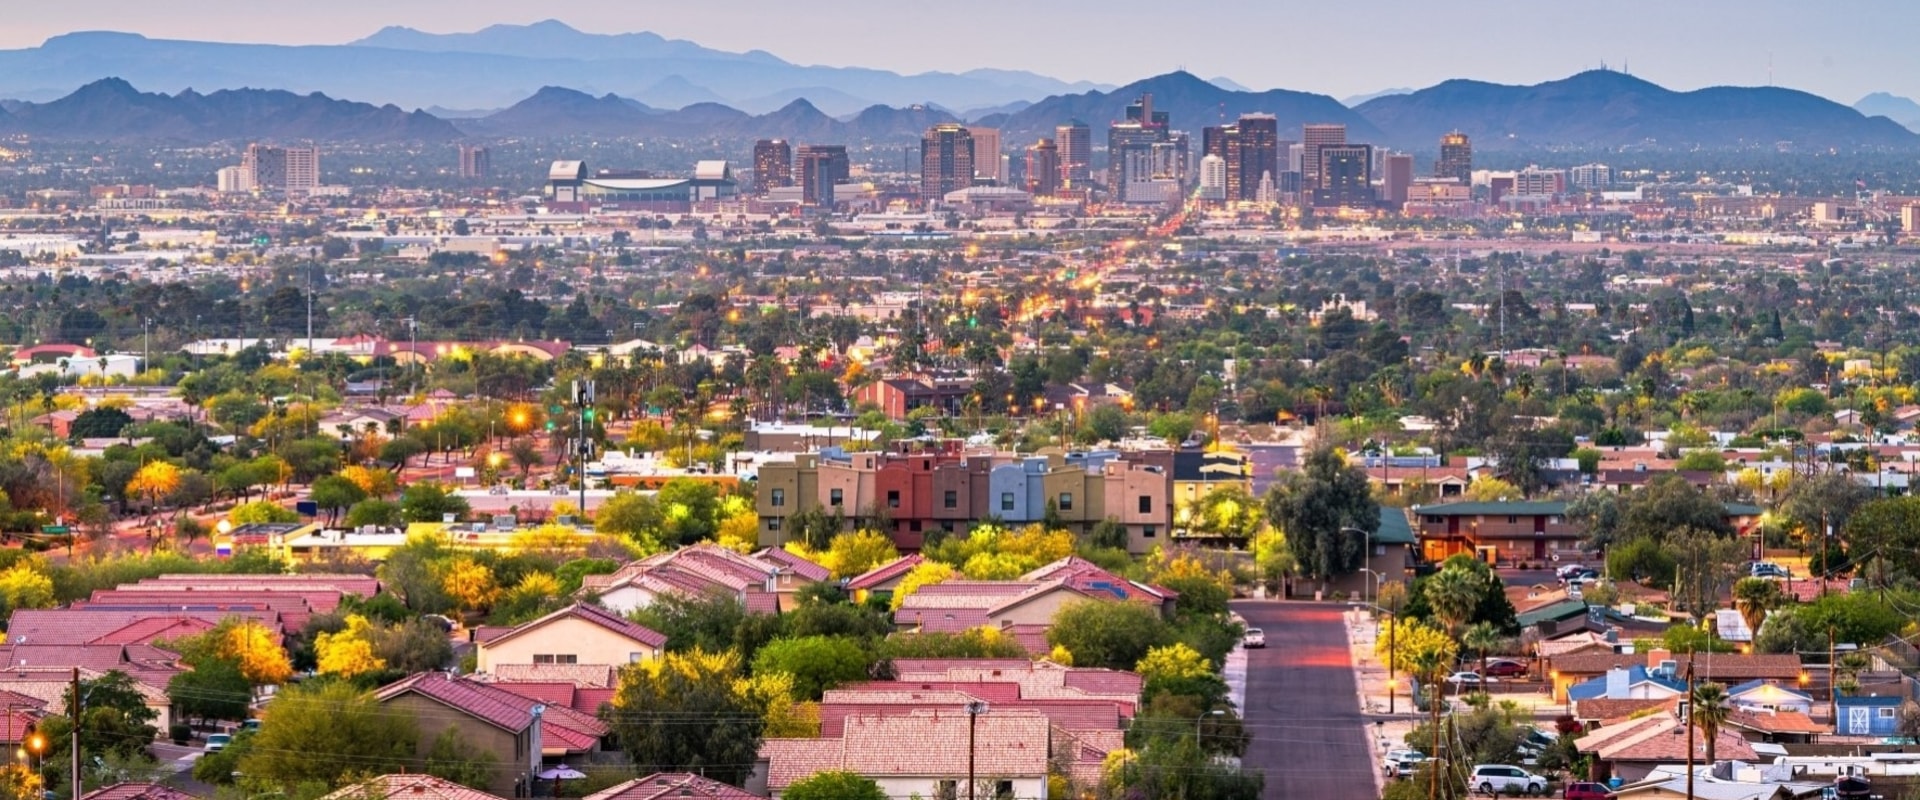 Is Scottsdale, Arizona Part of Phoenix?